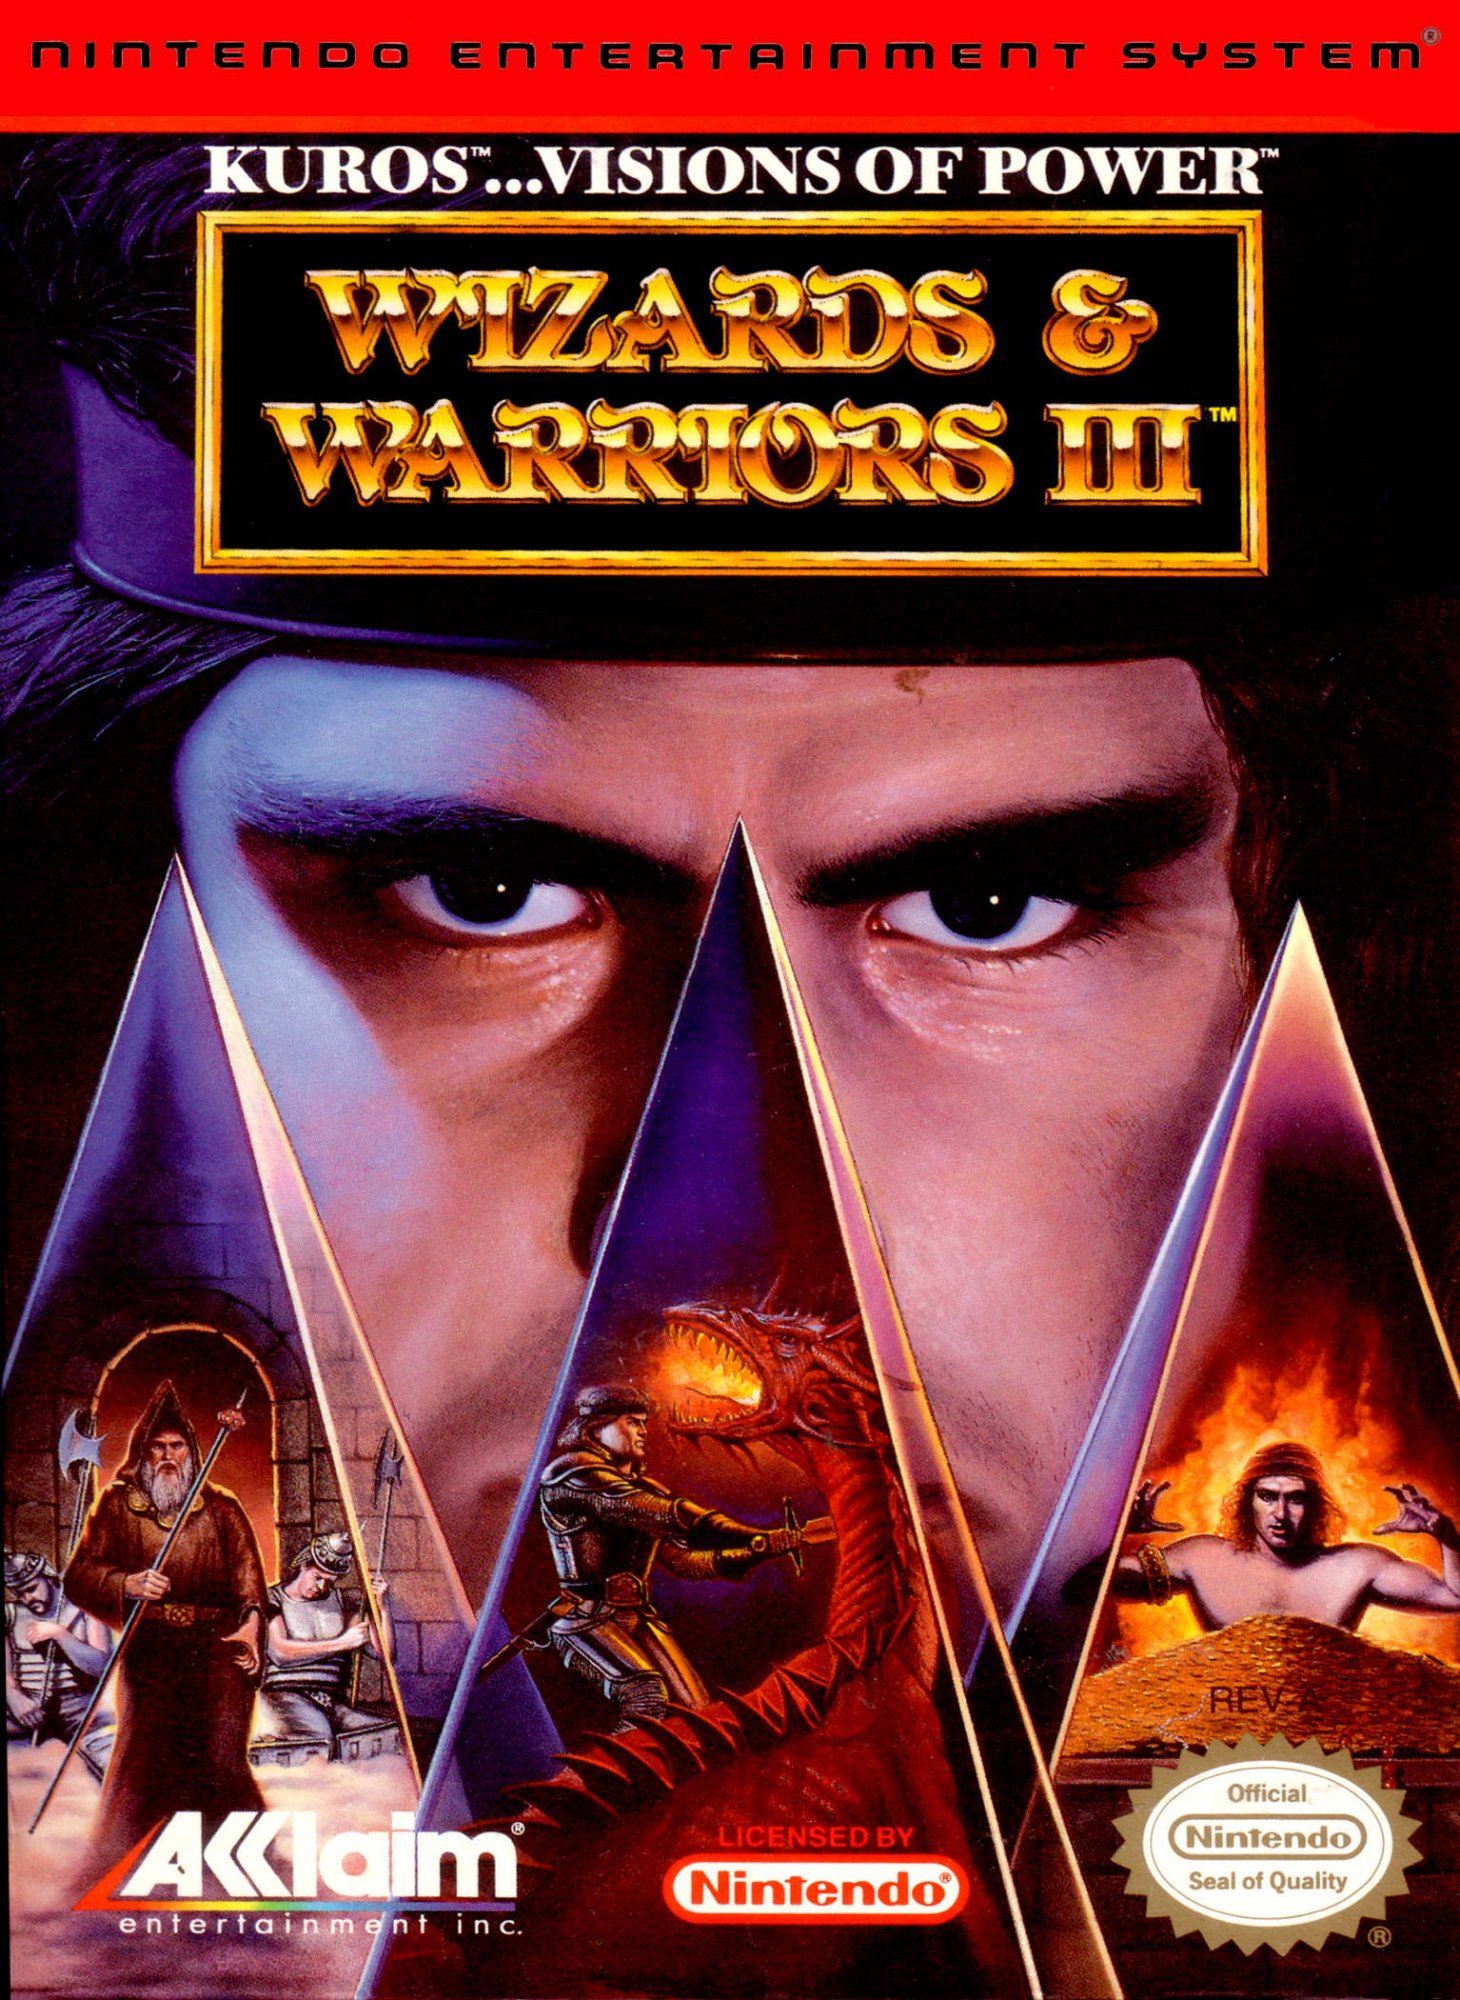 Wizards & Warriors III: Kuros - Visions of Power